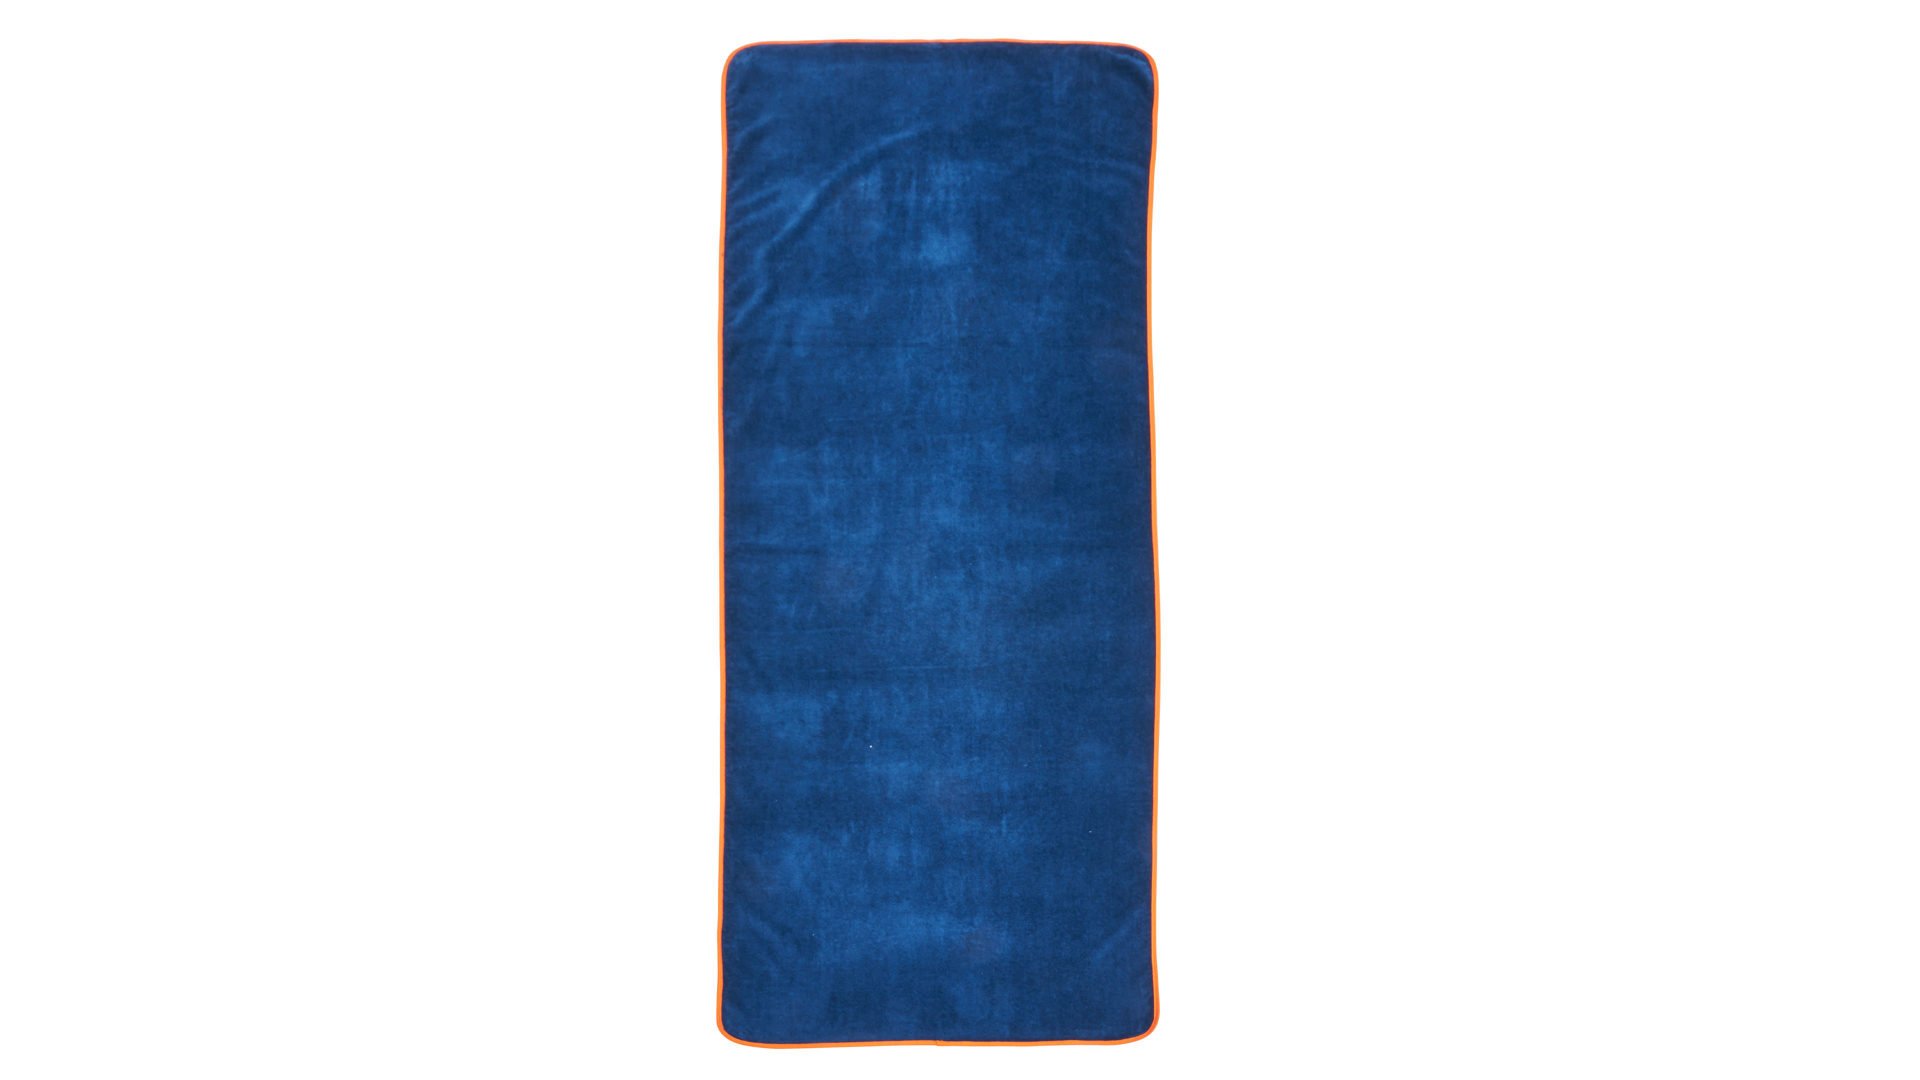 Saunahandtuch Done aus Stoff in Blau Done Saunatuch marineblaue Baumwolle – ca. 80 x 200 cm